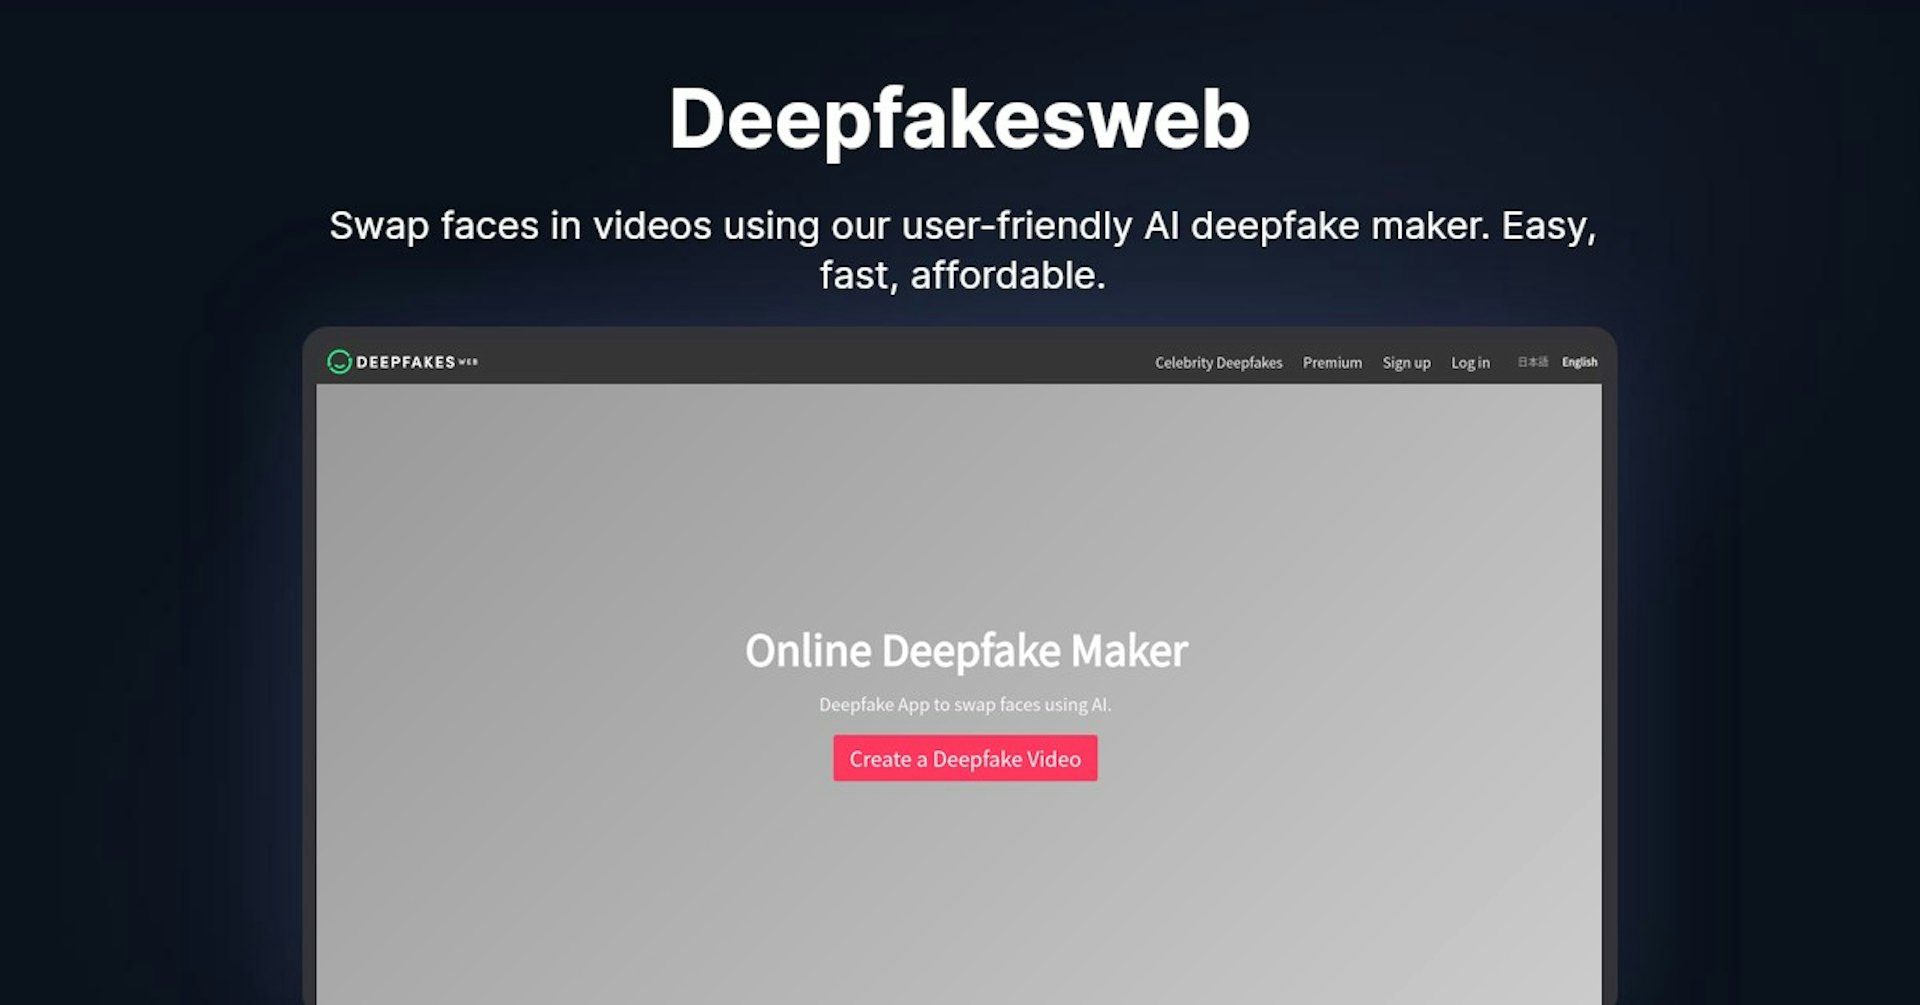 Deepfakesweb